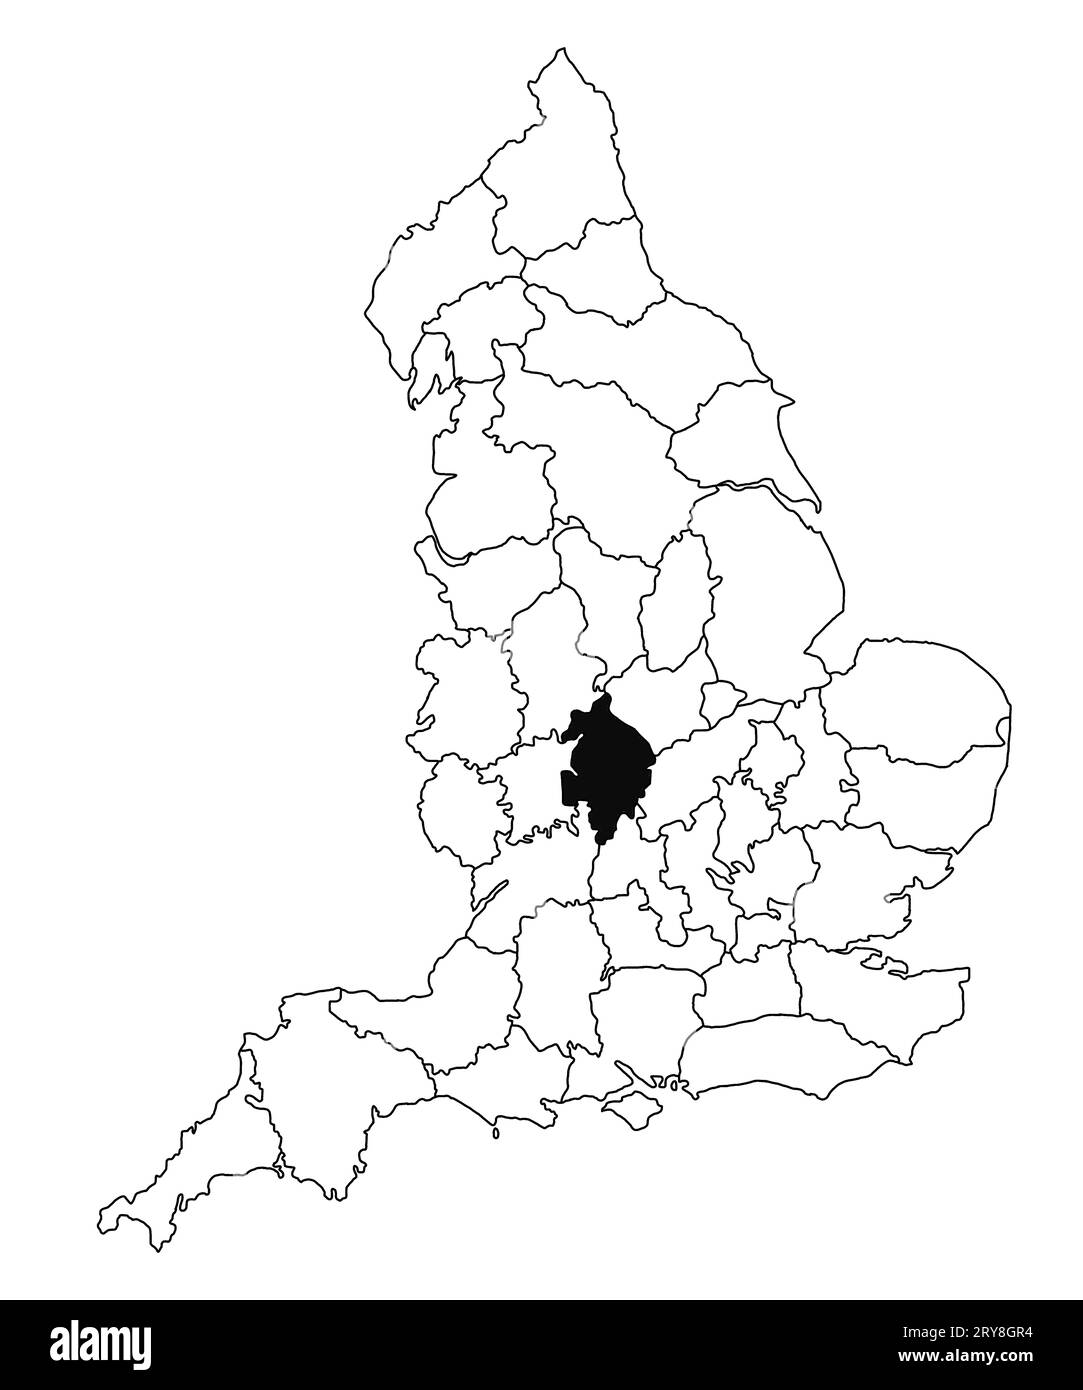 Karte von Warwickshire County in England auf weißem Hintergrund. Single County Karte, schwarz hervorgehoben auf der englischen Verwaltungskarte. Vereinigtes Königreich Stockfoto